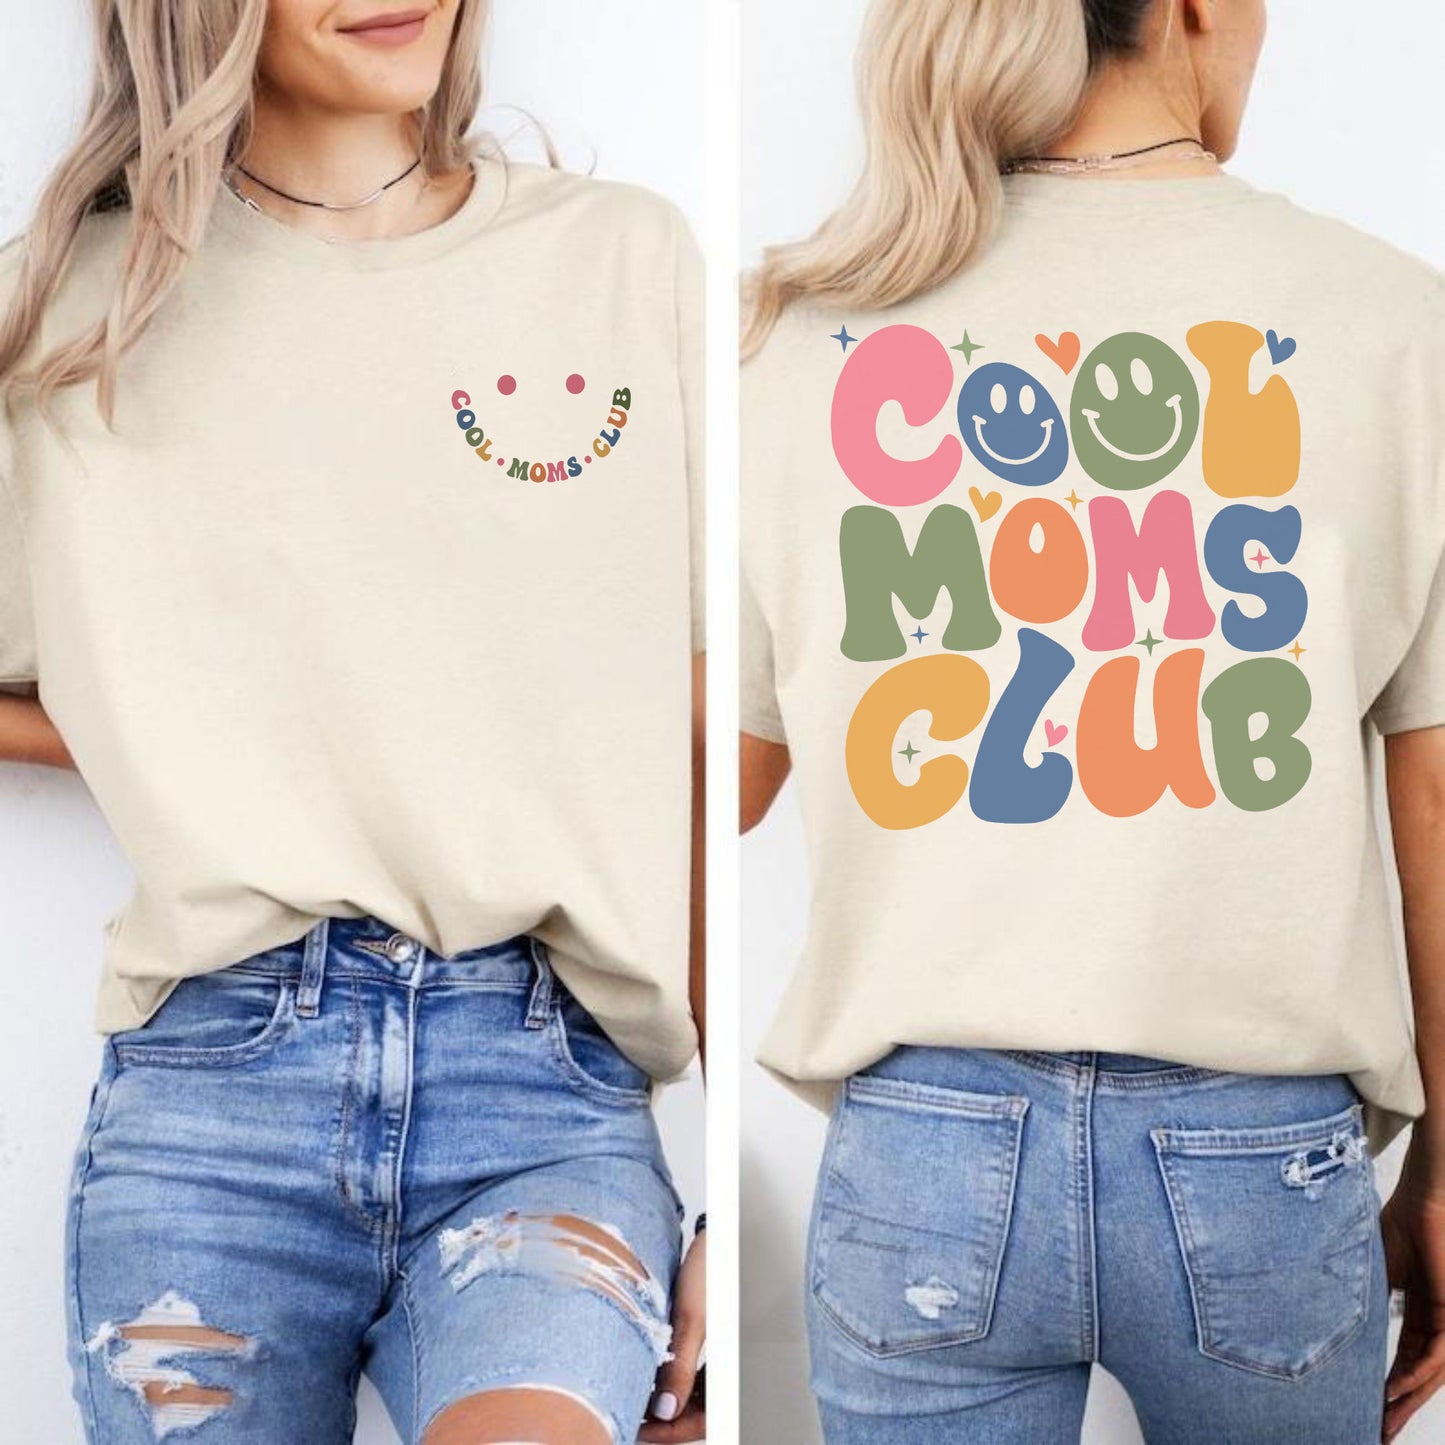 Cool Moms Club Shirts und Kapuzenpullover für Mama